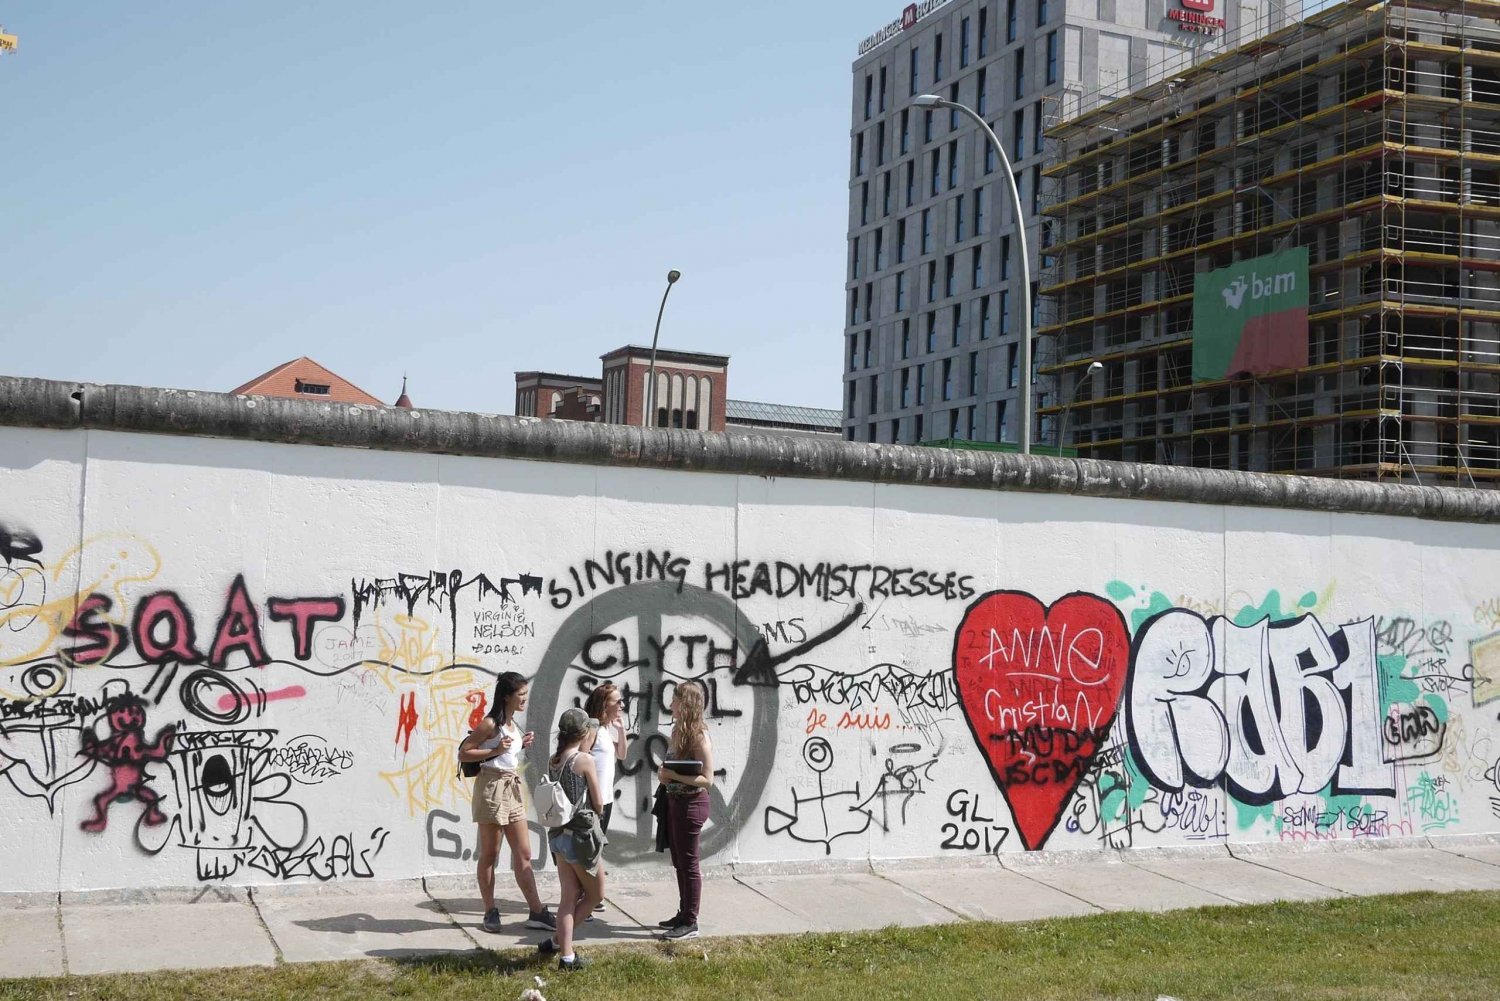 Berlim: História e trilhas alternativas com guia local